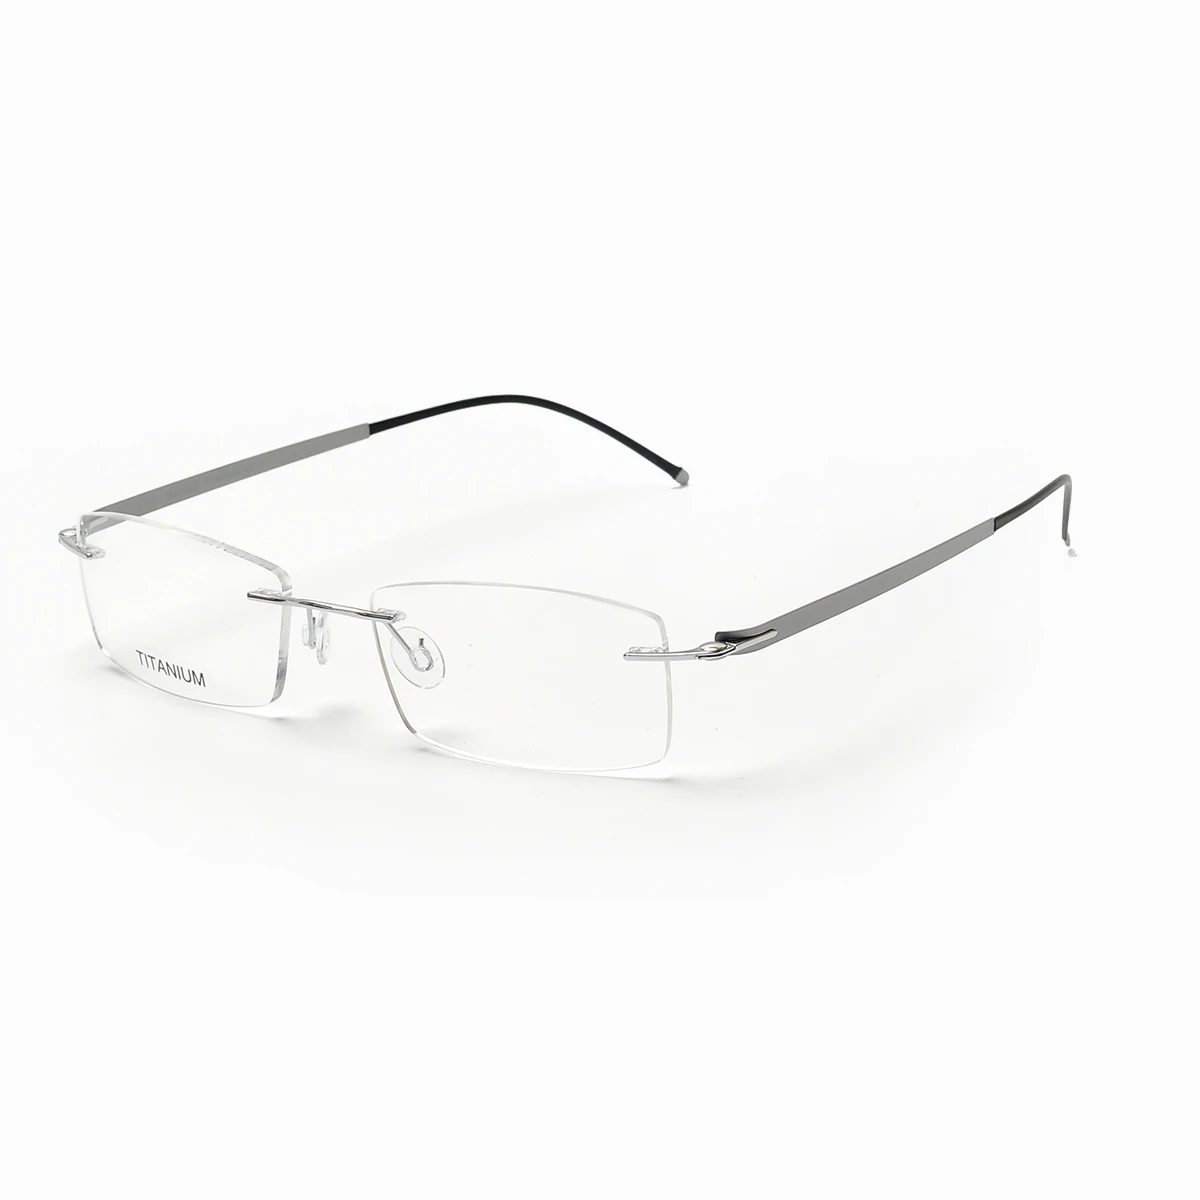 

Brand Designer Rimless Golden Glasses Frame Men Optical Eyeglasses Frames Prescription Glasses Myopia spectacles Frames, Avalaible